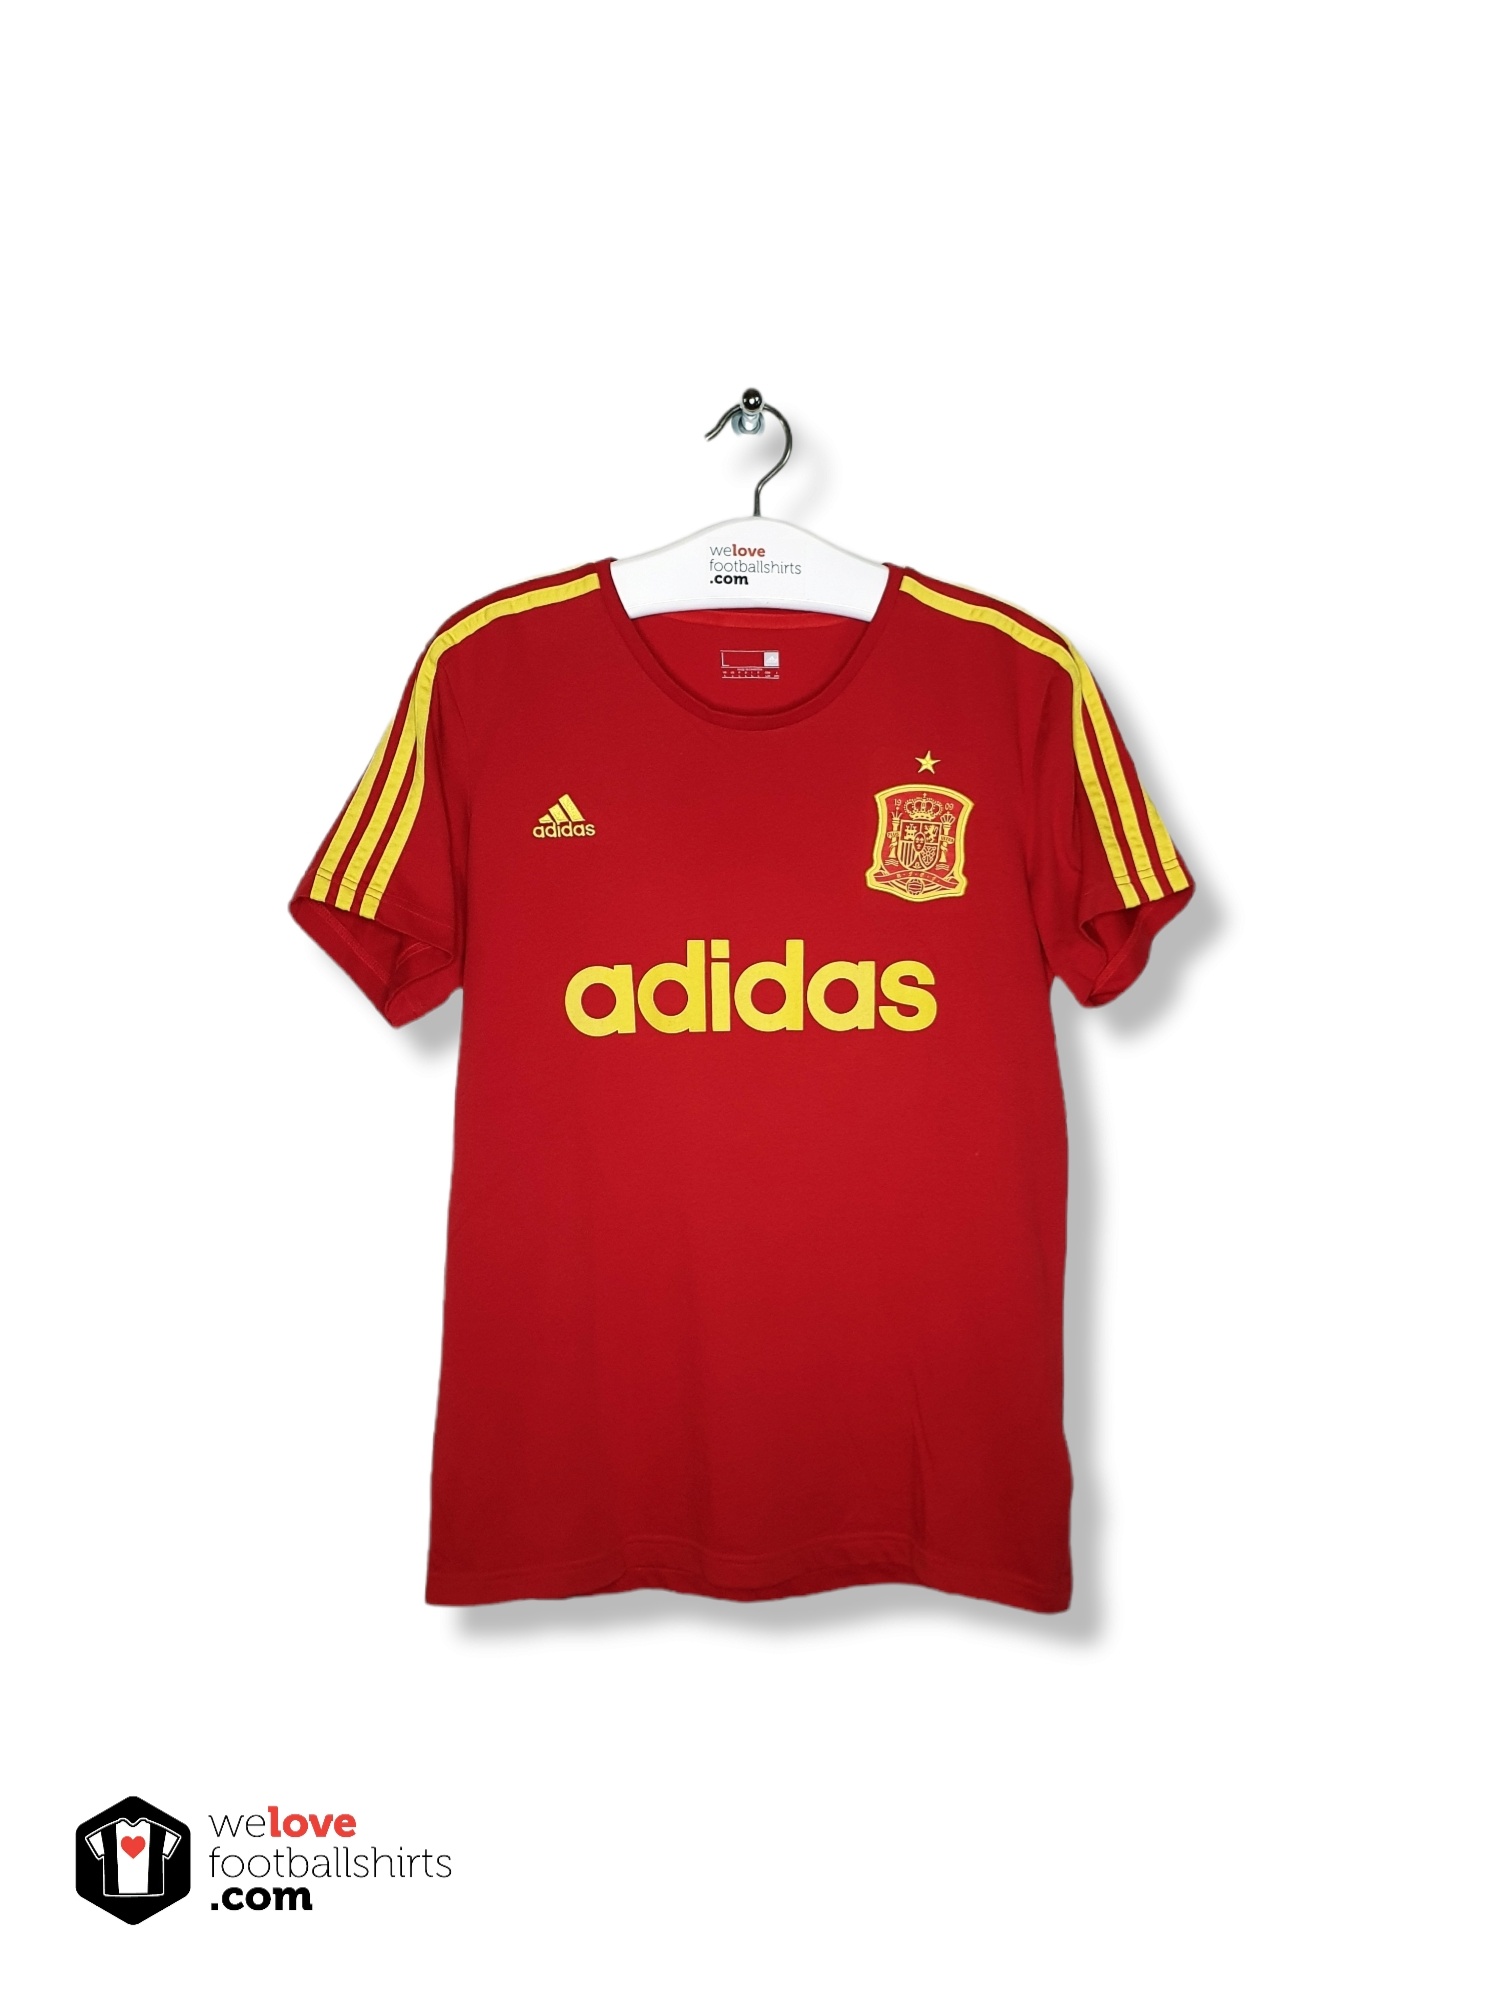 Zumbido rifle sin embargo Adidas football shirt Spain 2016/17 - Welovefootballshirts.com